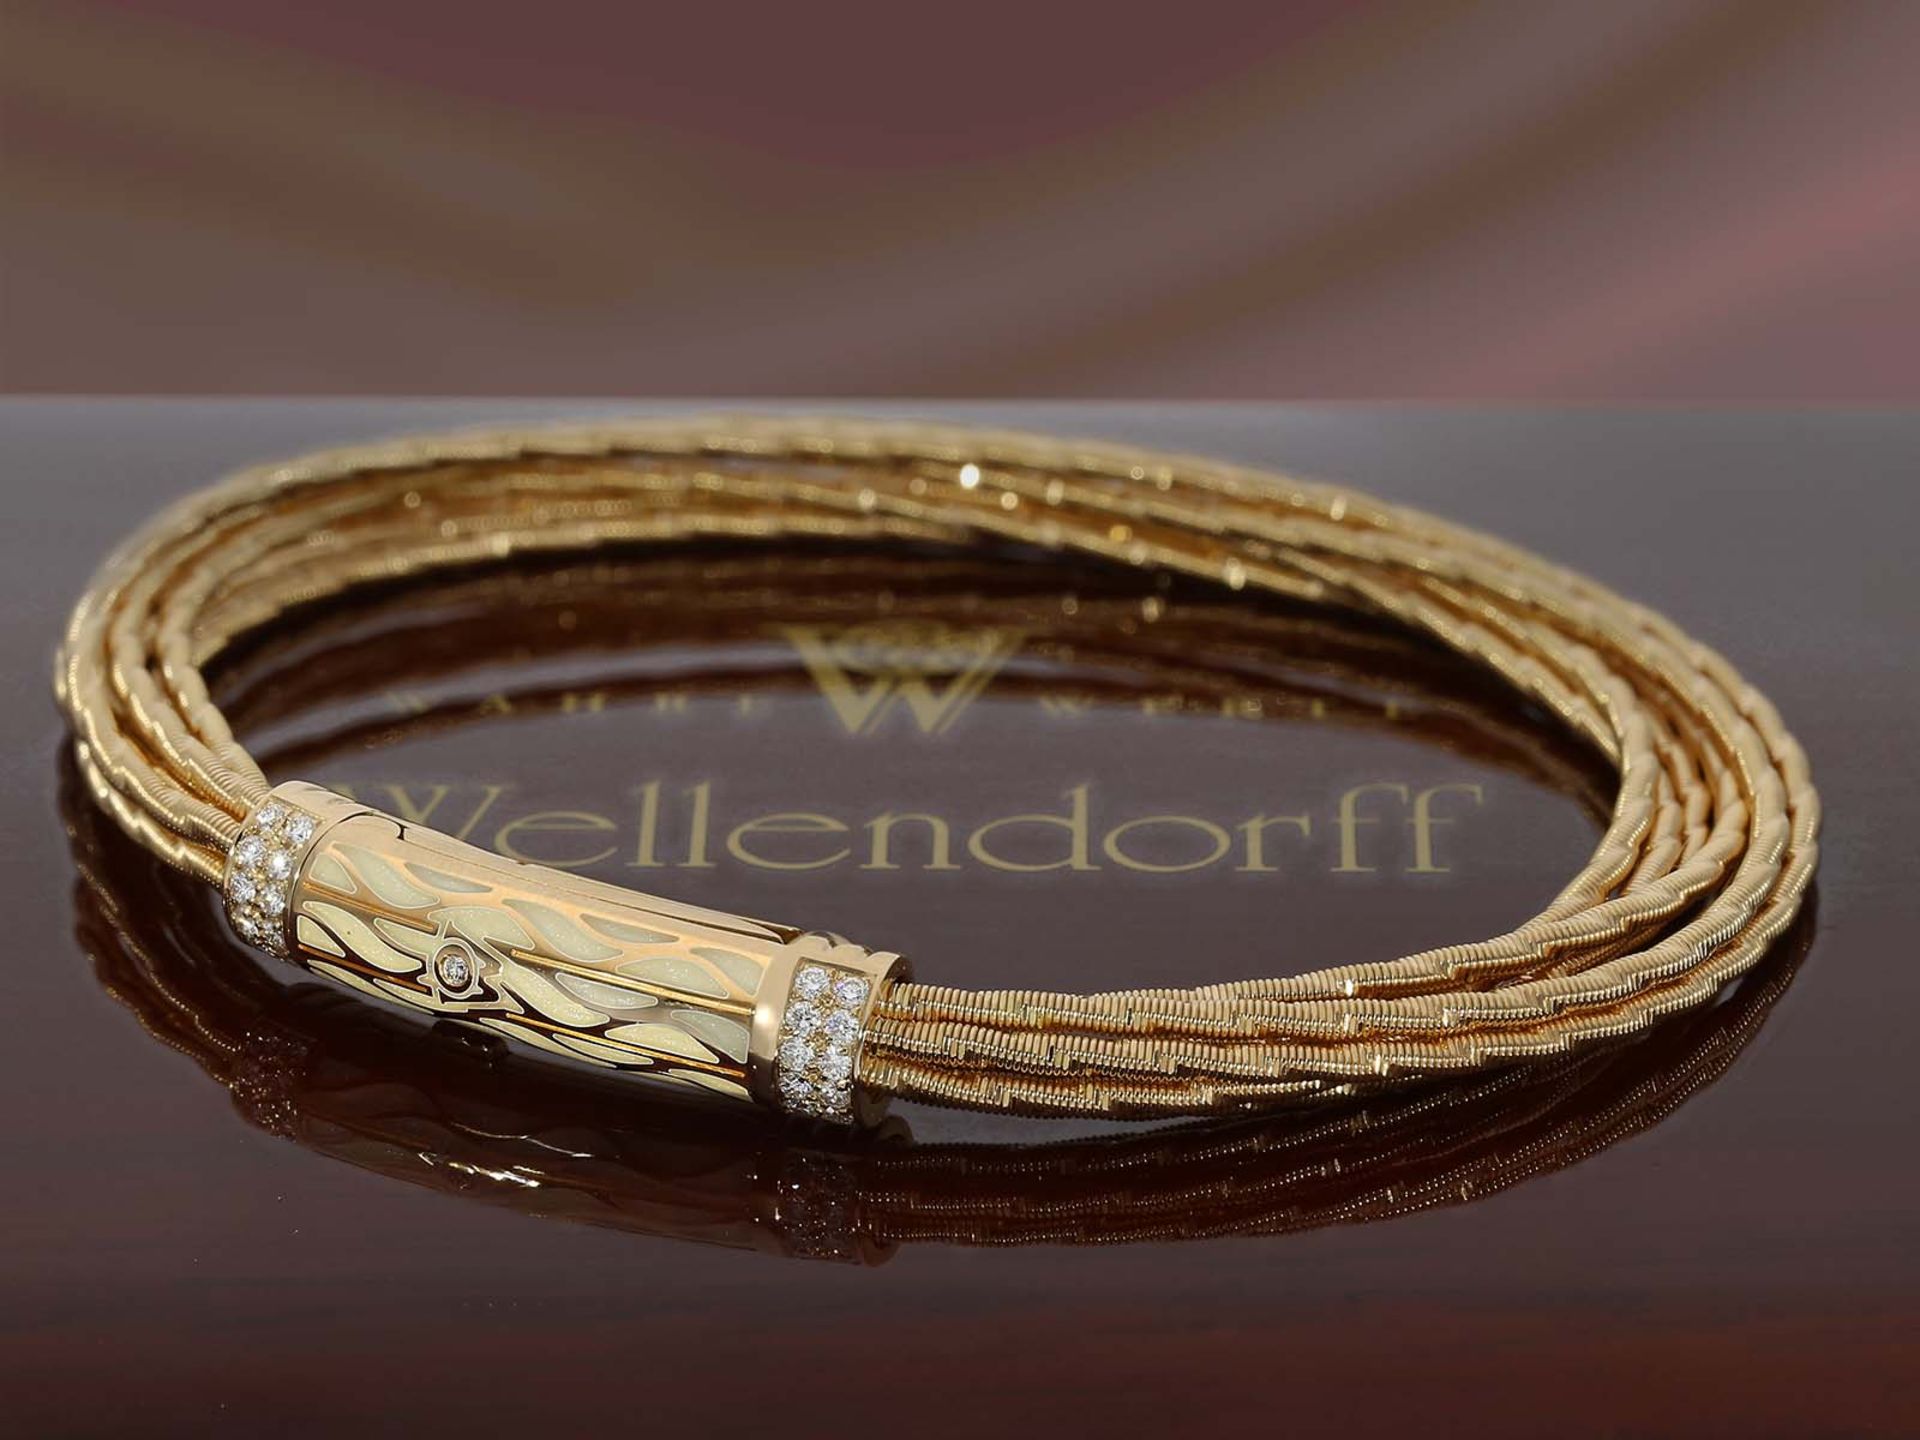 Armband: exquisites, neuwertiges Gold/Emaille-Armband von Wellendorff "Flügel der Nacht",